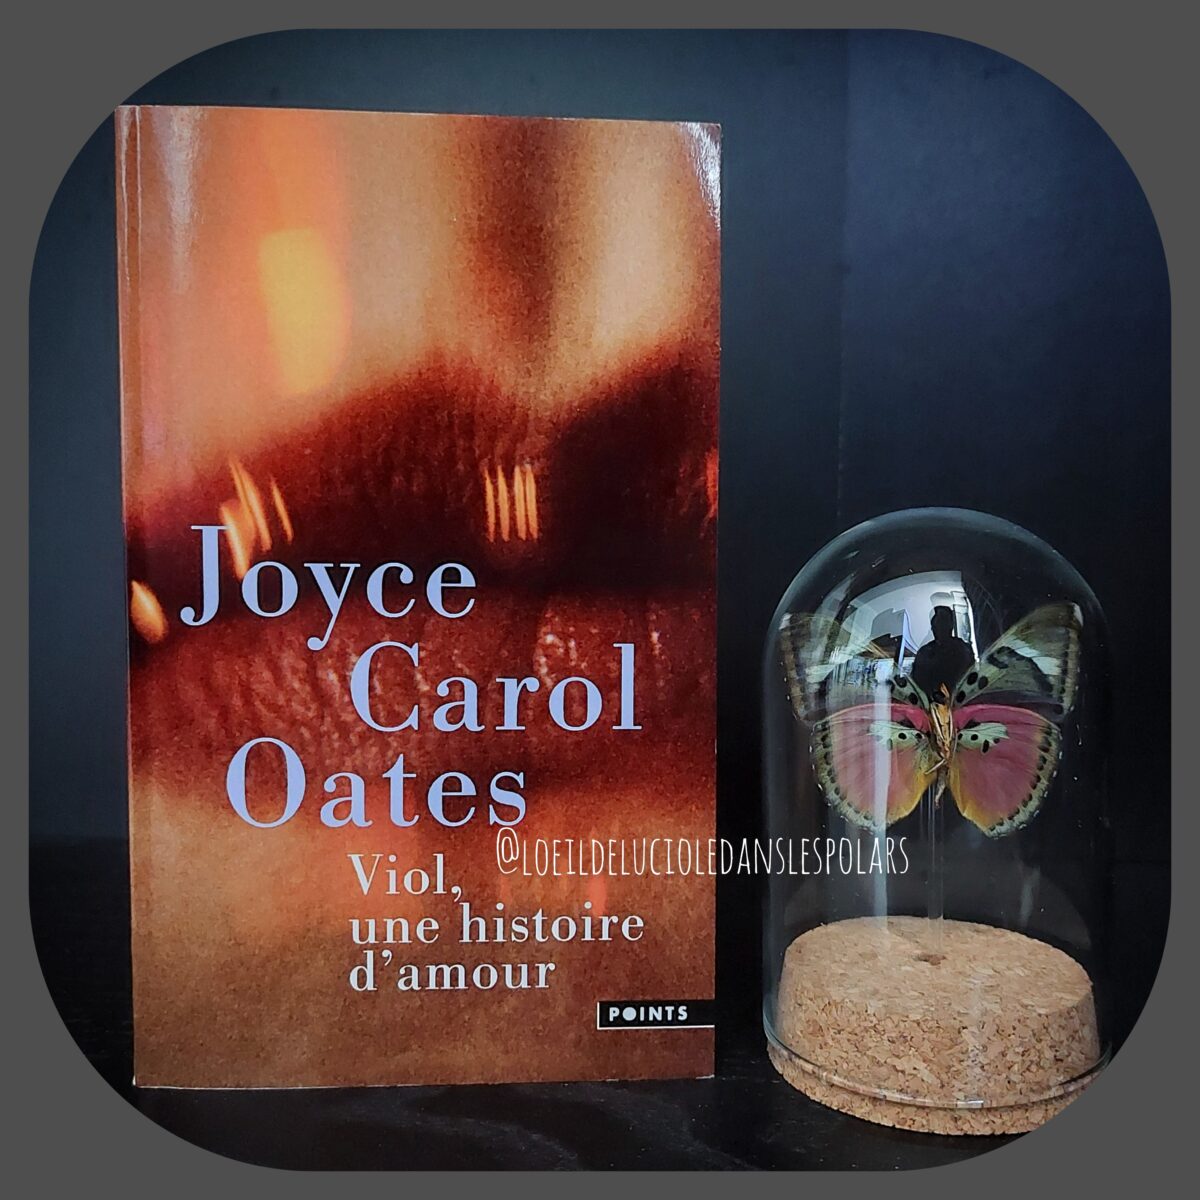 Viol, une histoire d’amour de Joyce Carol Oates